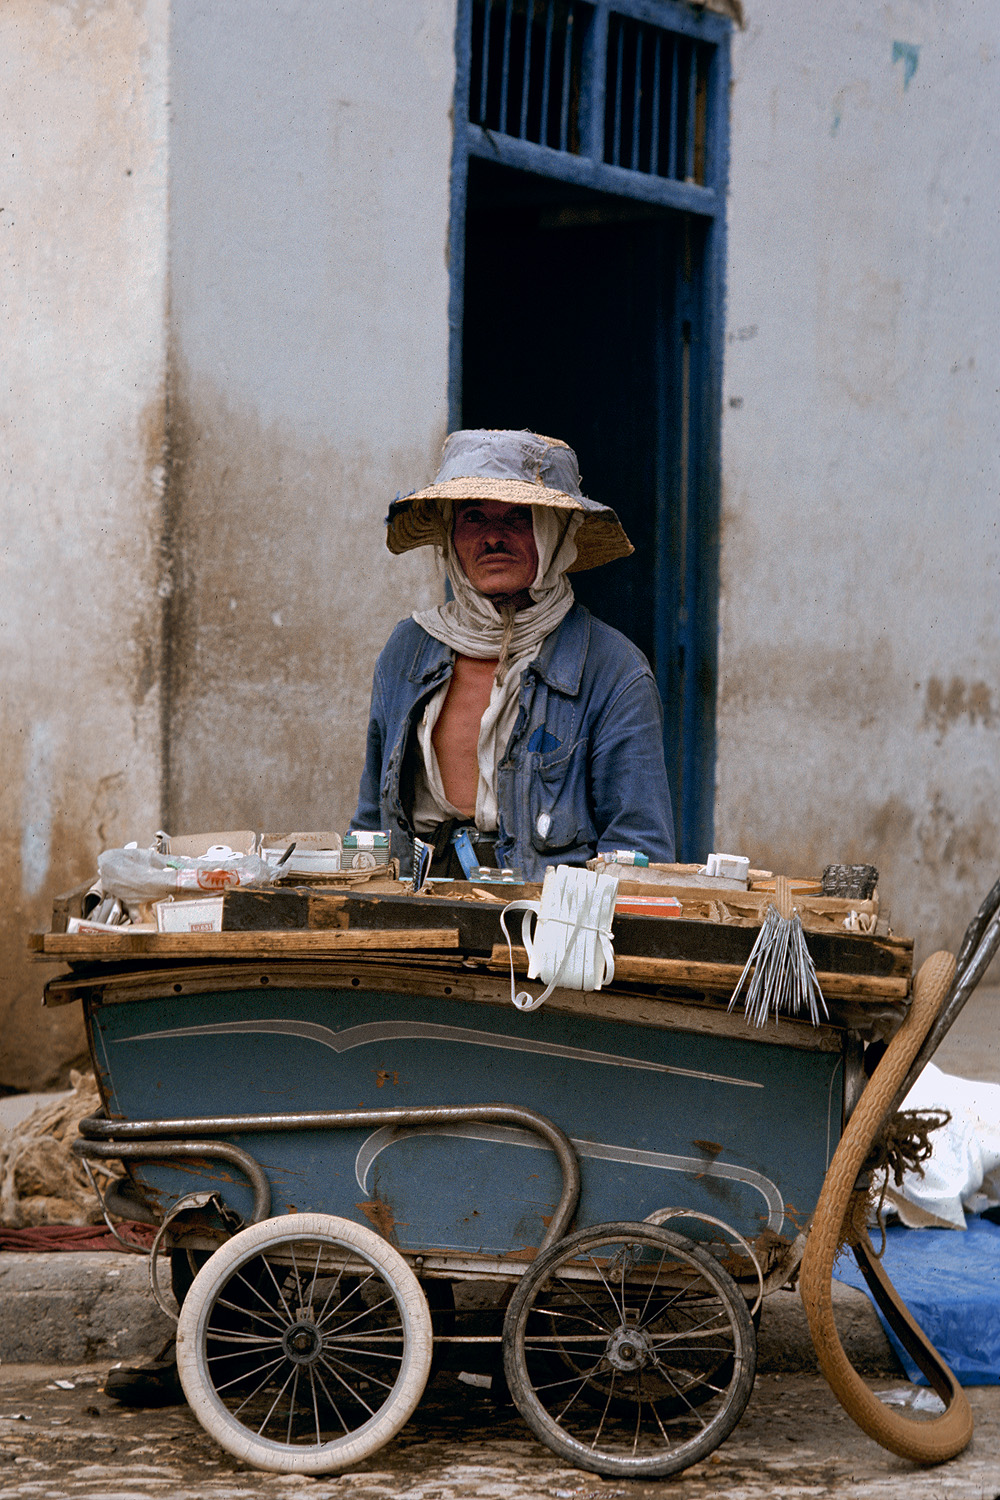 bill-hocker-sewing-supplier-tunisia-1972